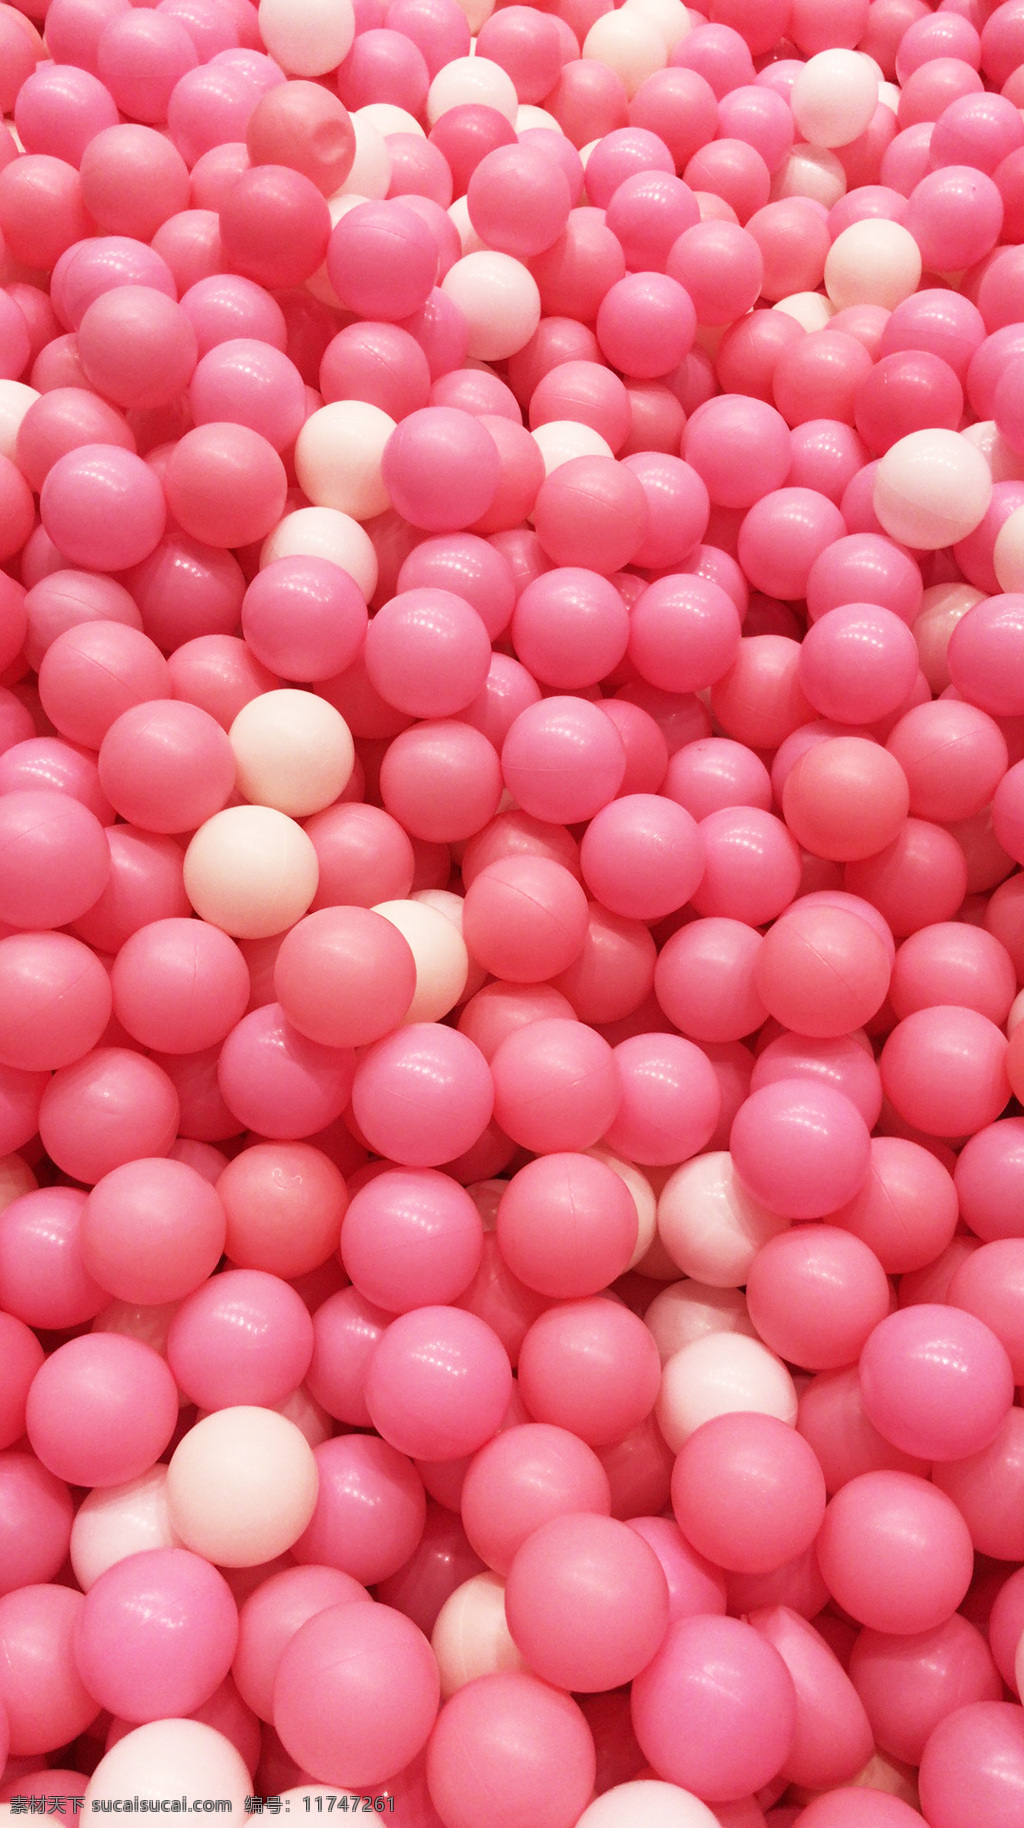 粉色海洋球 粉色 球 海洋球 密集 背景 自然景观